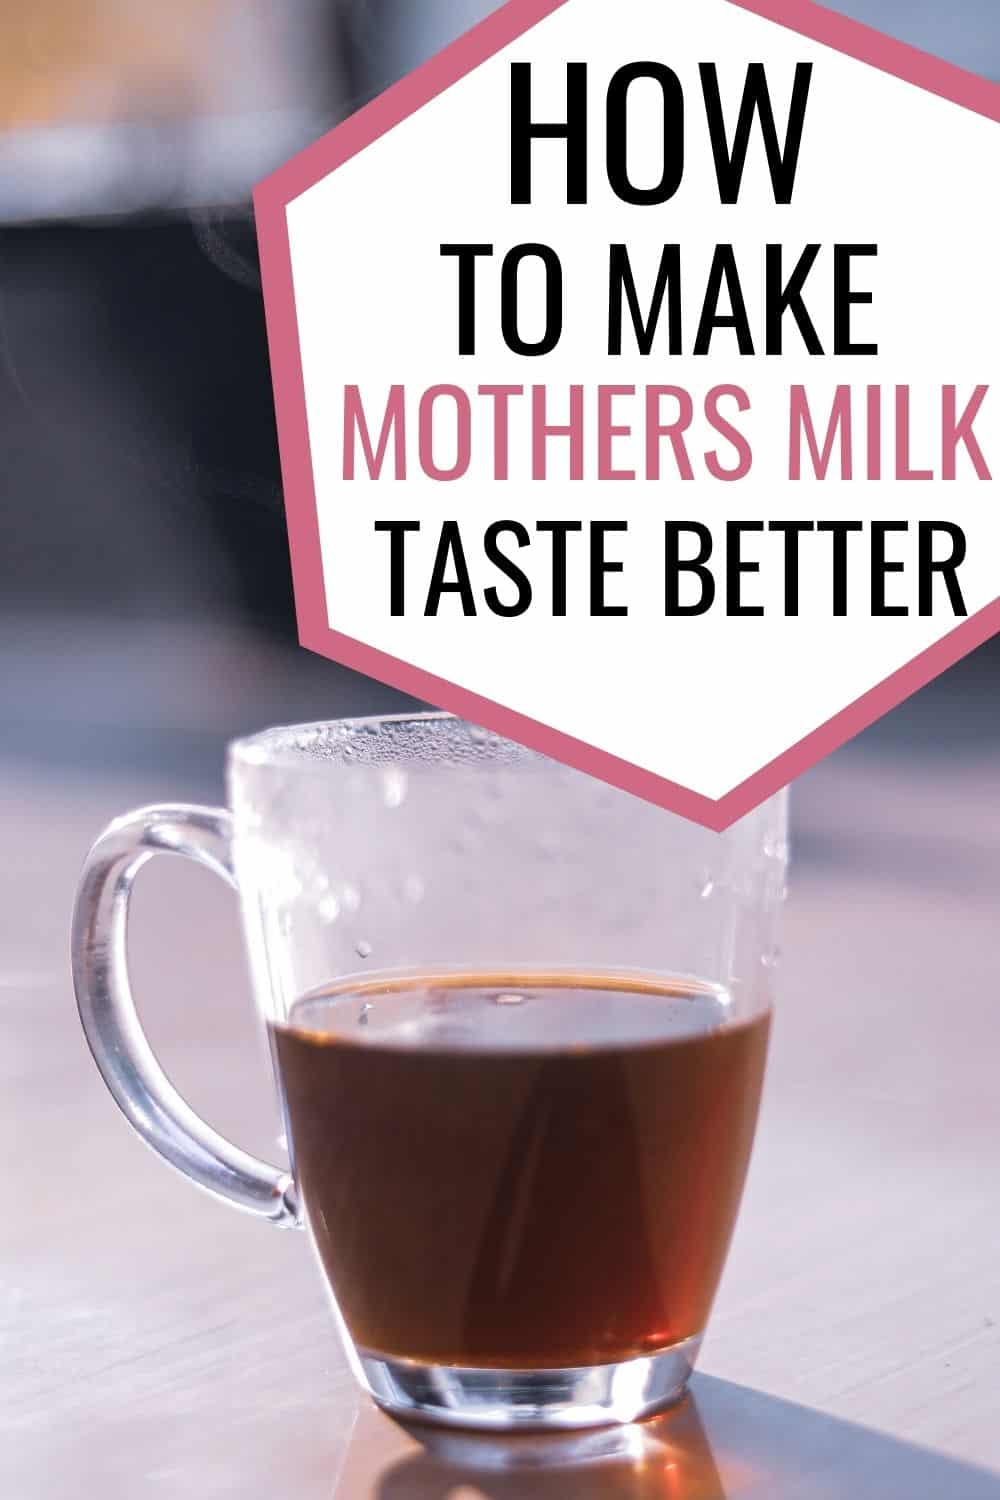 How to Make Mother's Milk Tea Taste Better